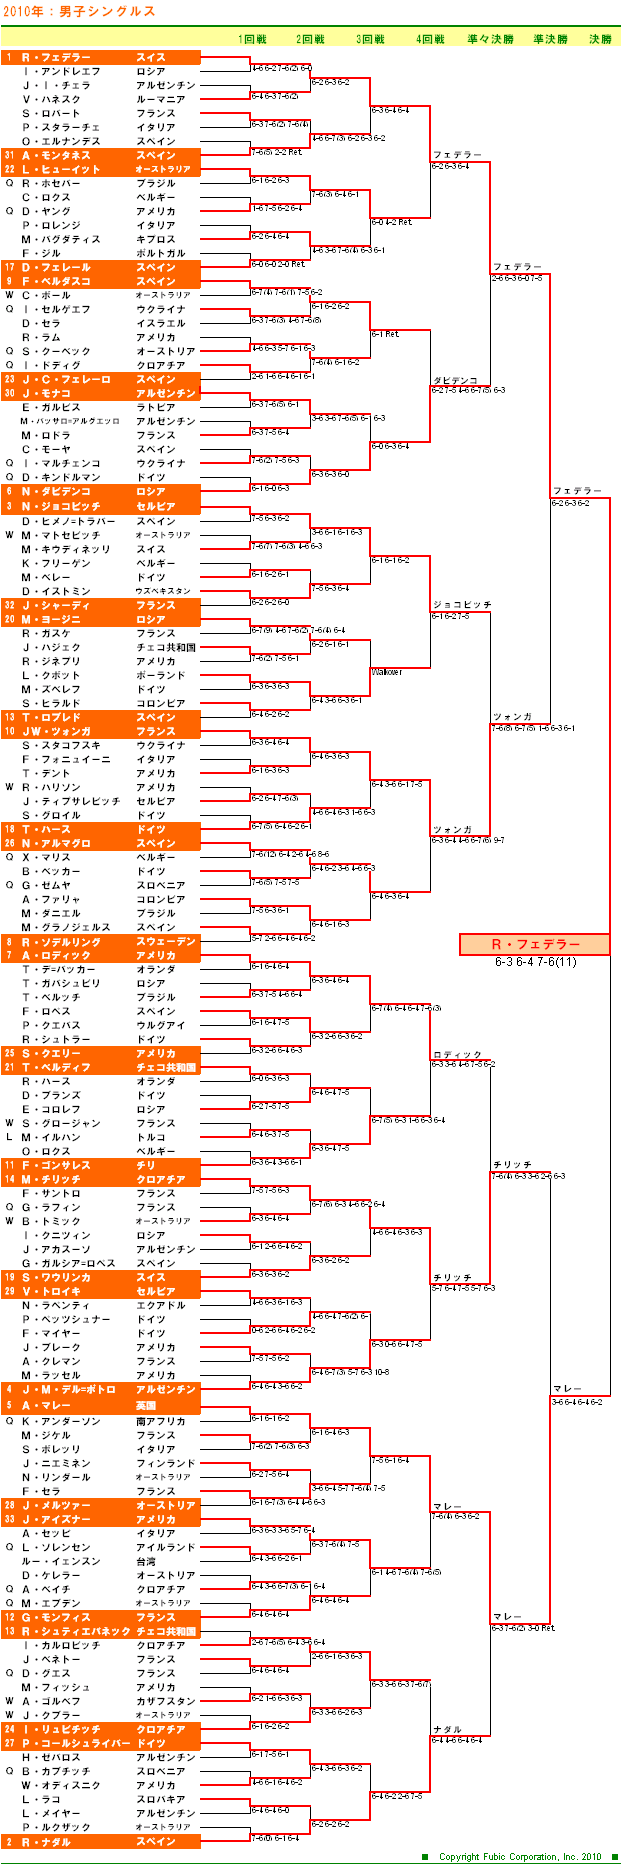 全豪オープンテニス2010　男子シングルスドロー表